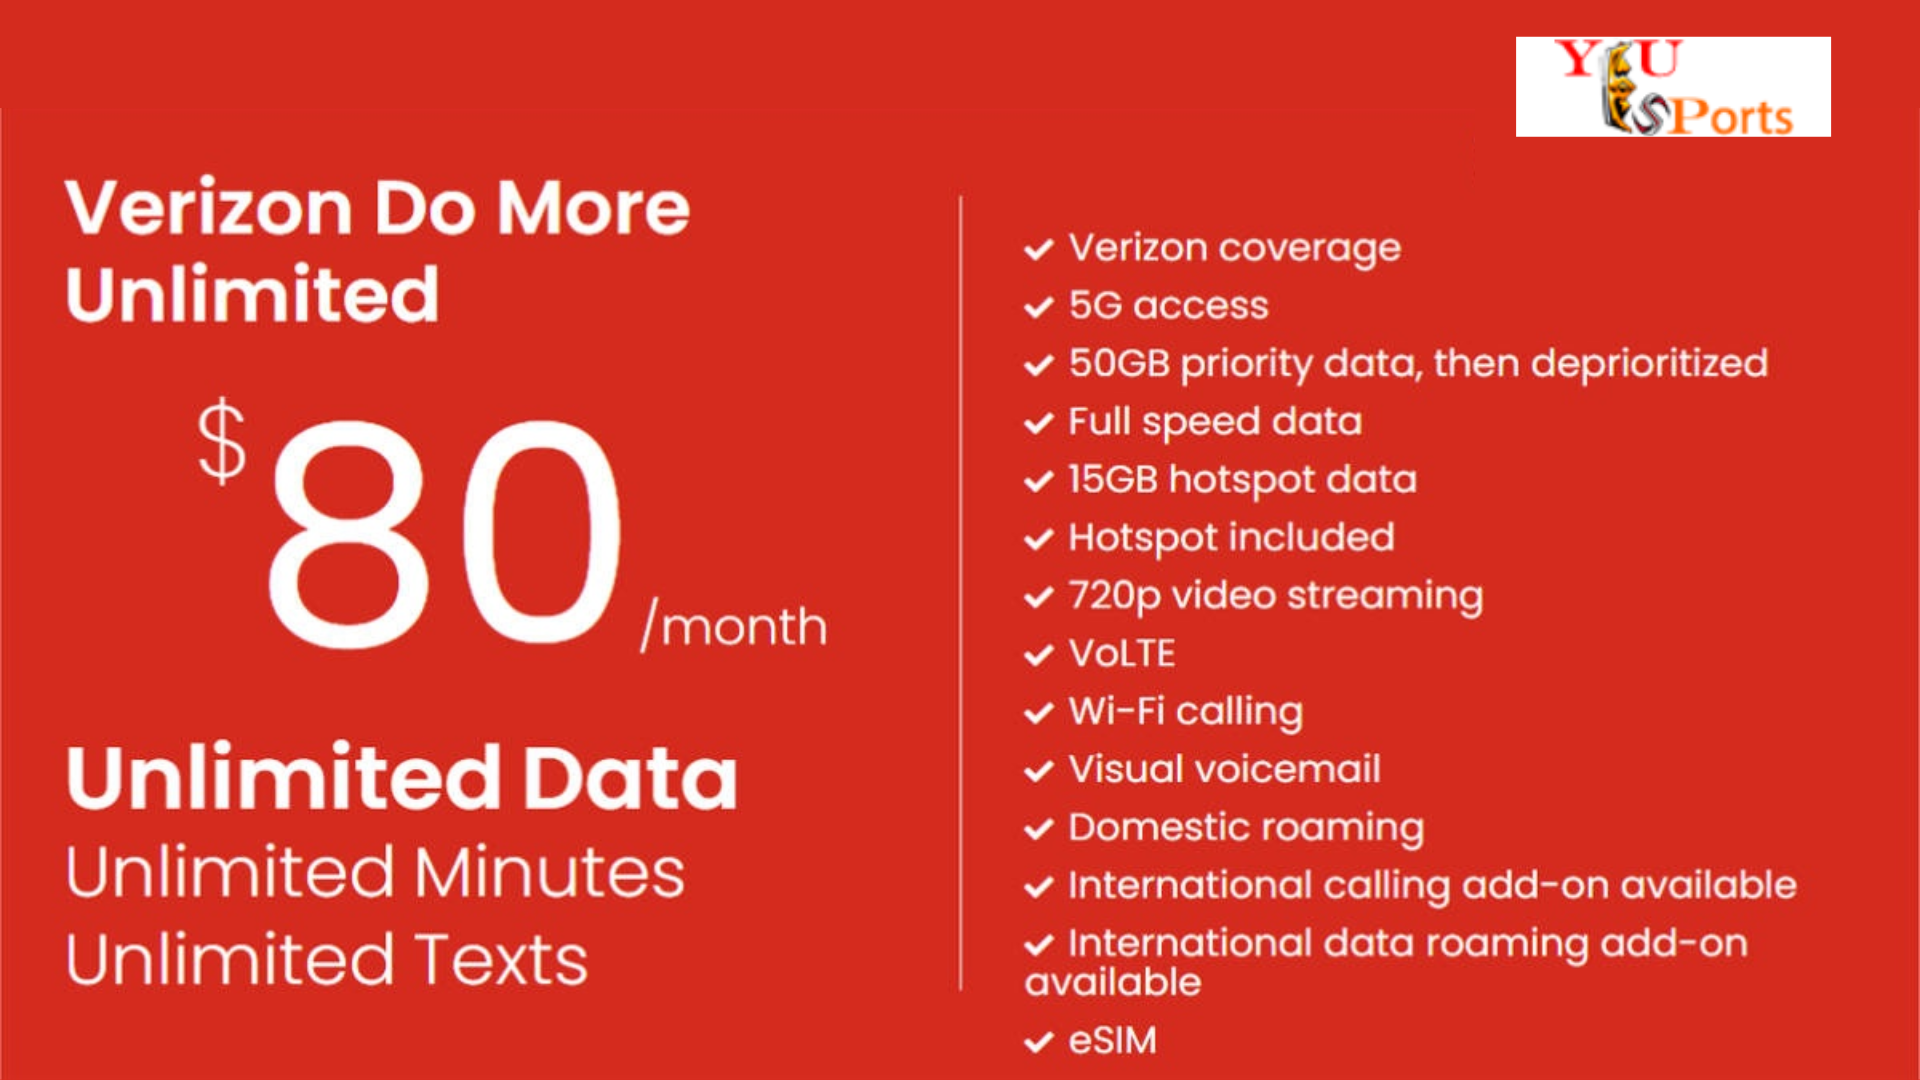 Verizon Mobile Data Plans For Work- 5G Do More